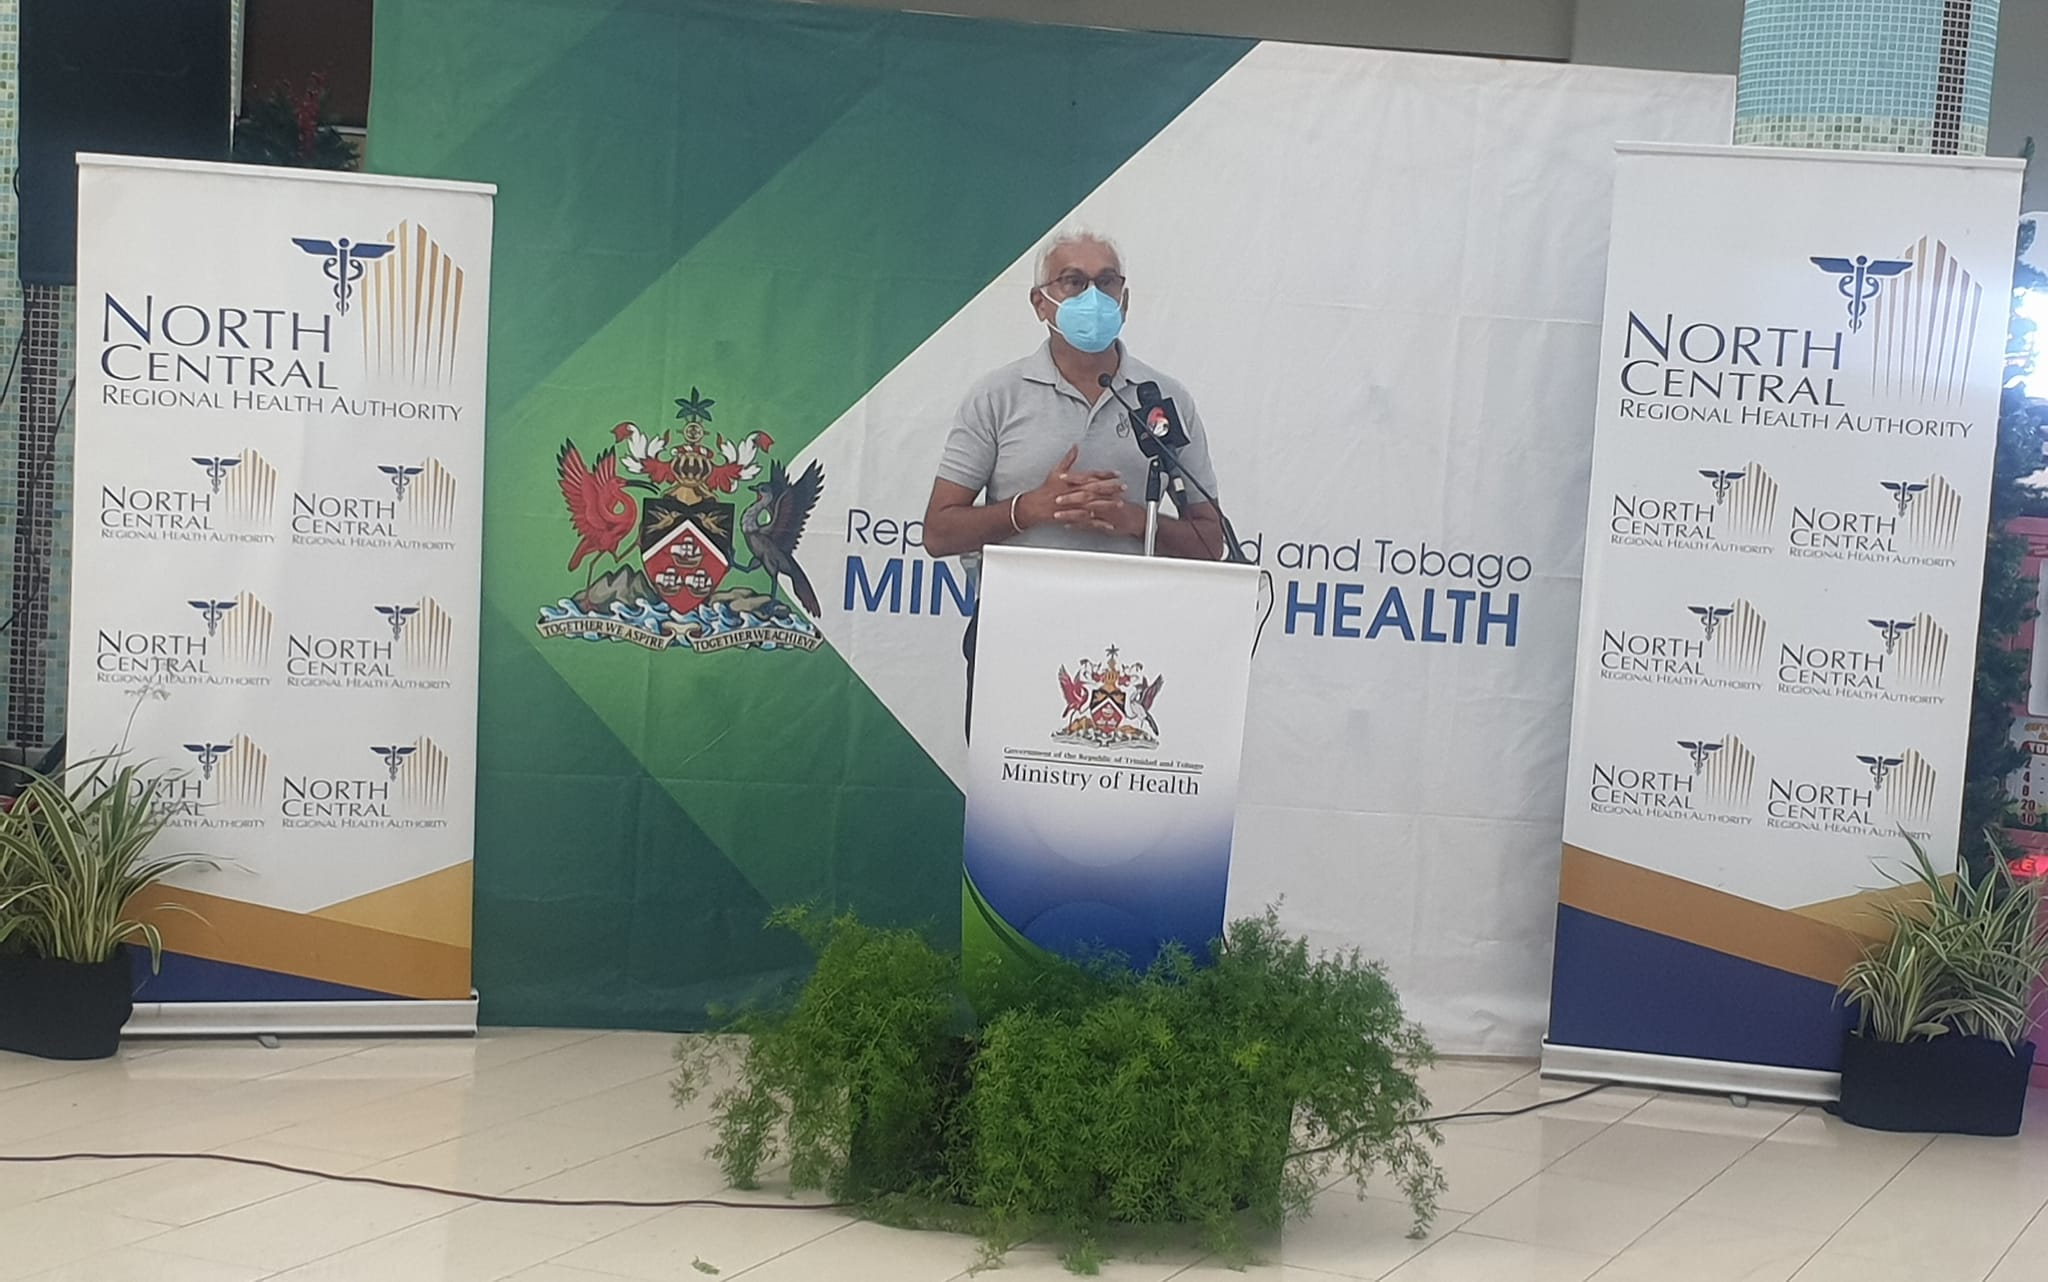 Health Minister assures no return of mask mandate